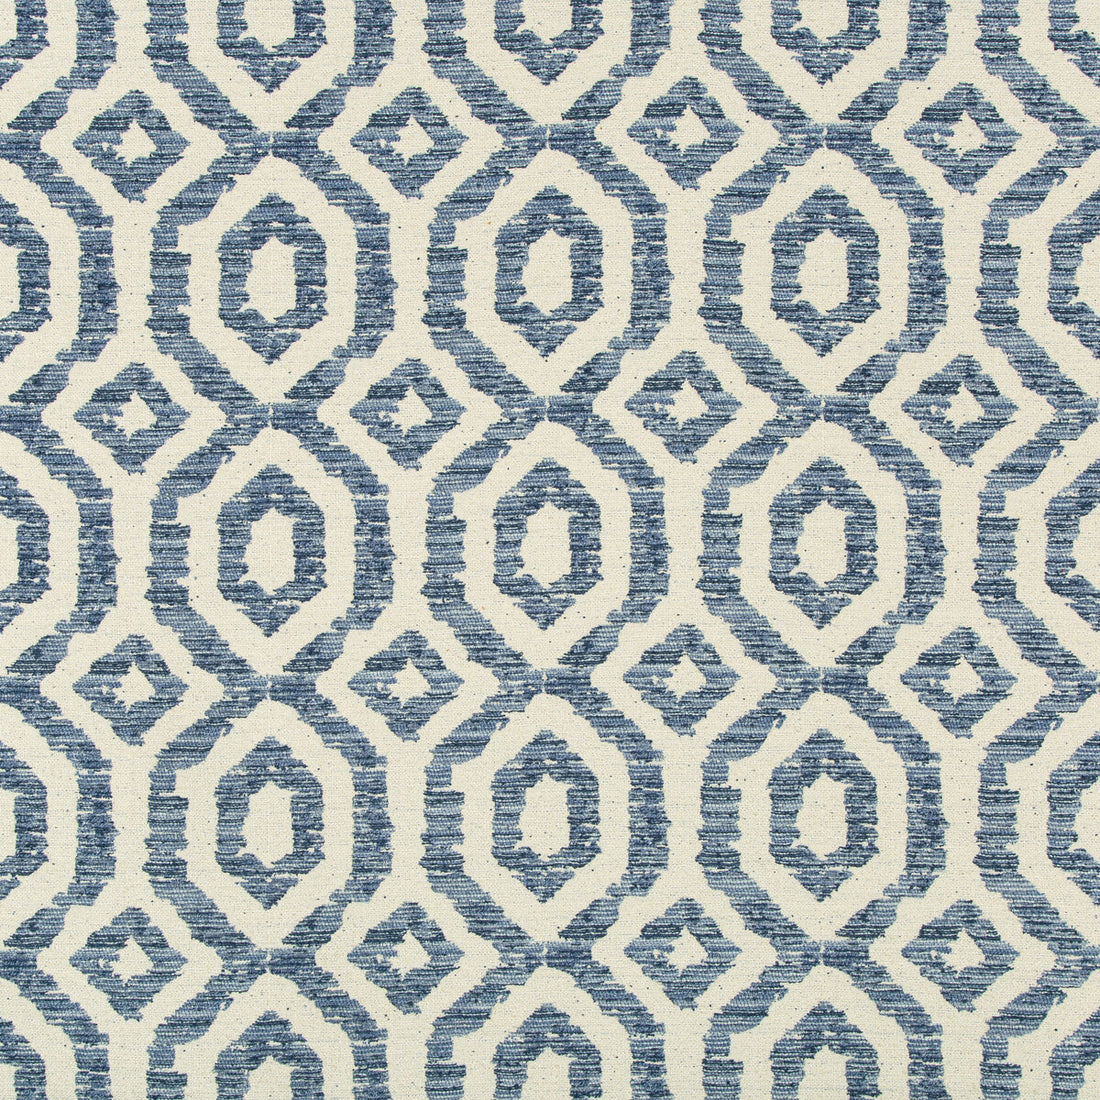 Kravet Design fabric in 35685-511 color - pattern 35685.511.0 - by Kravet Design